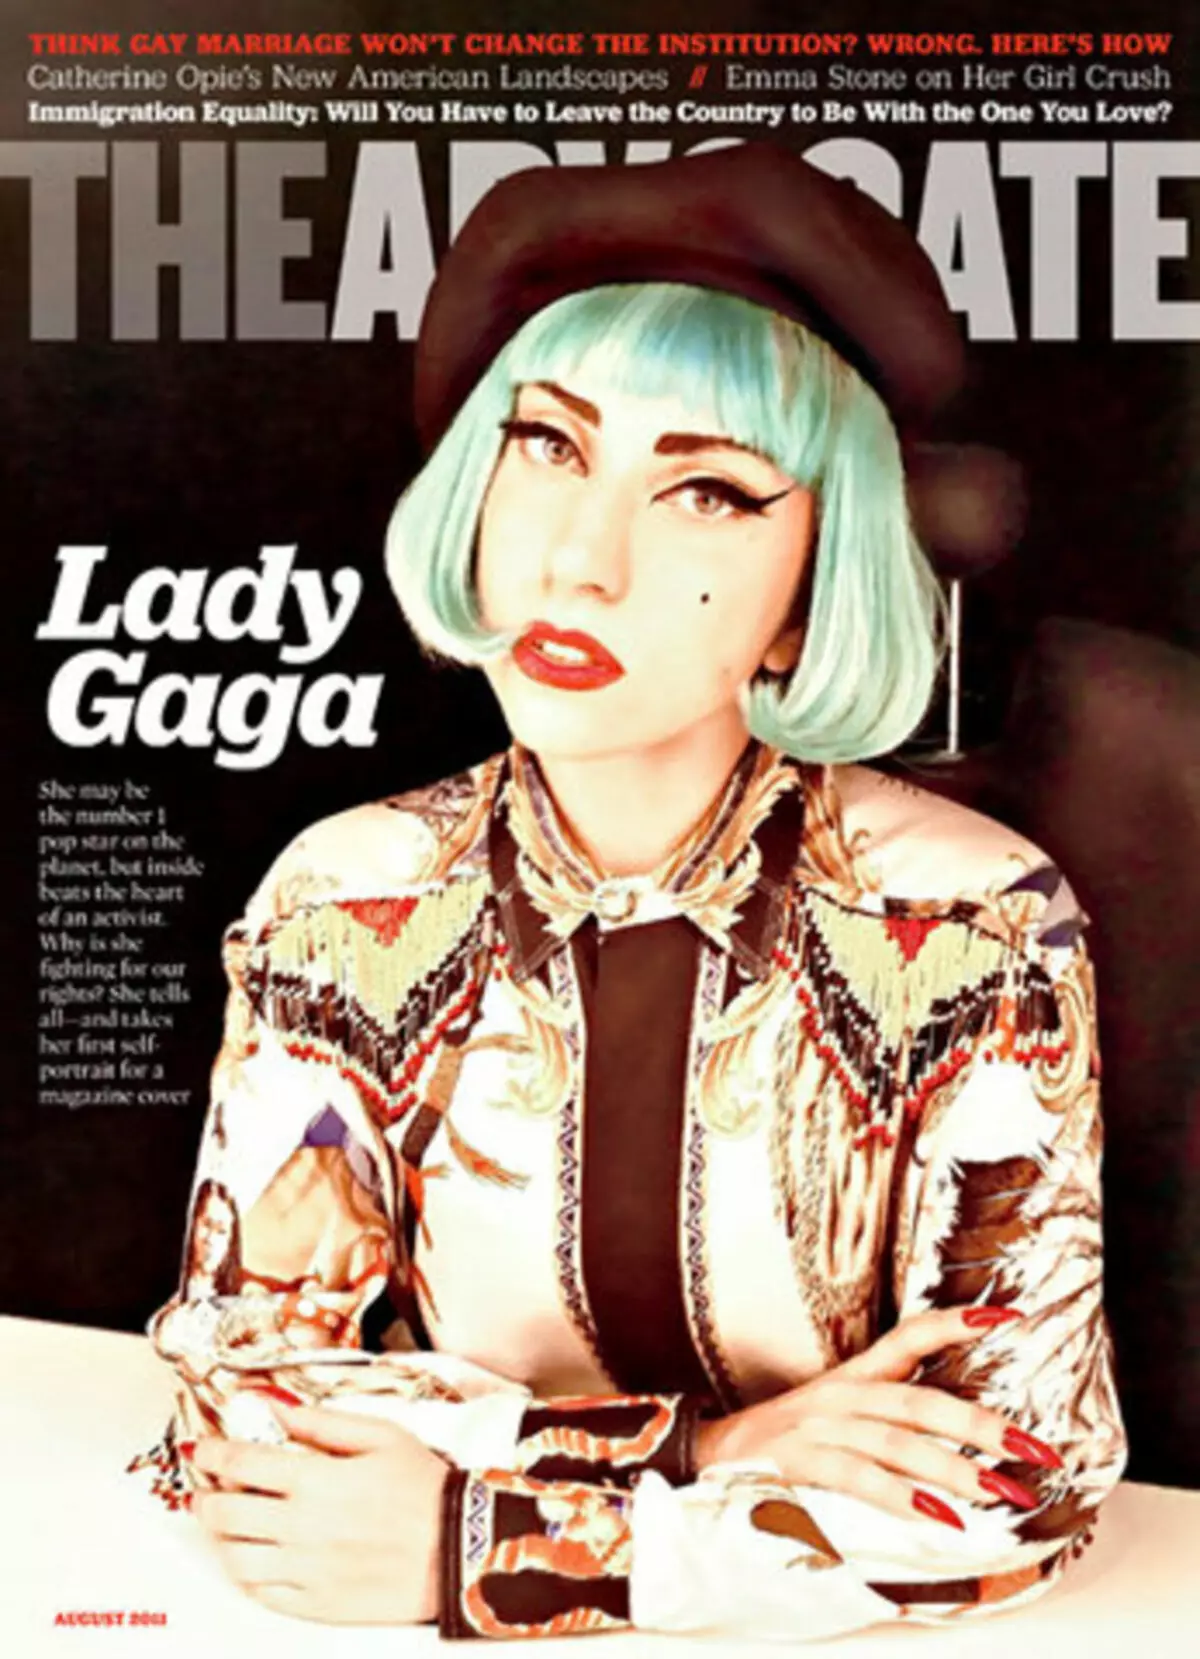 Lady Gaga offese da una dichiarazione che manipola la comunità gay